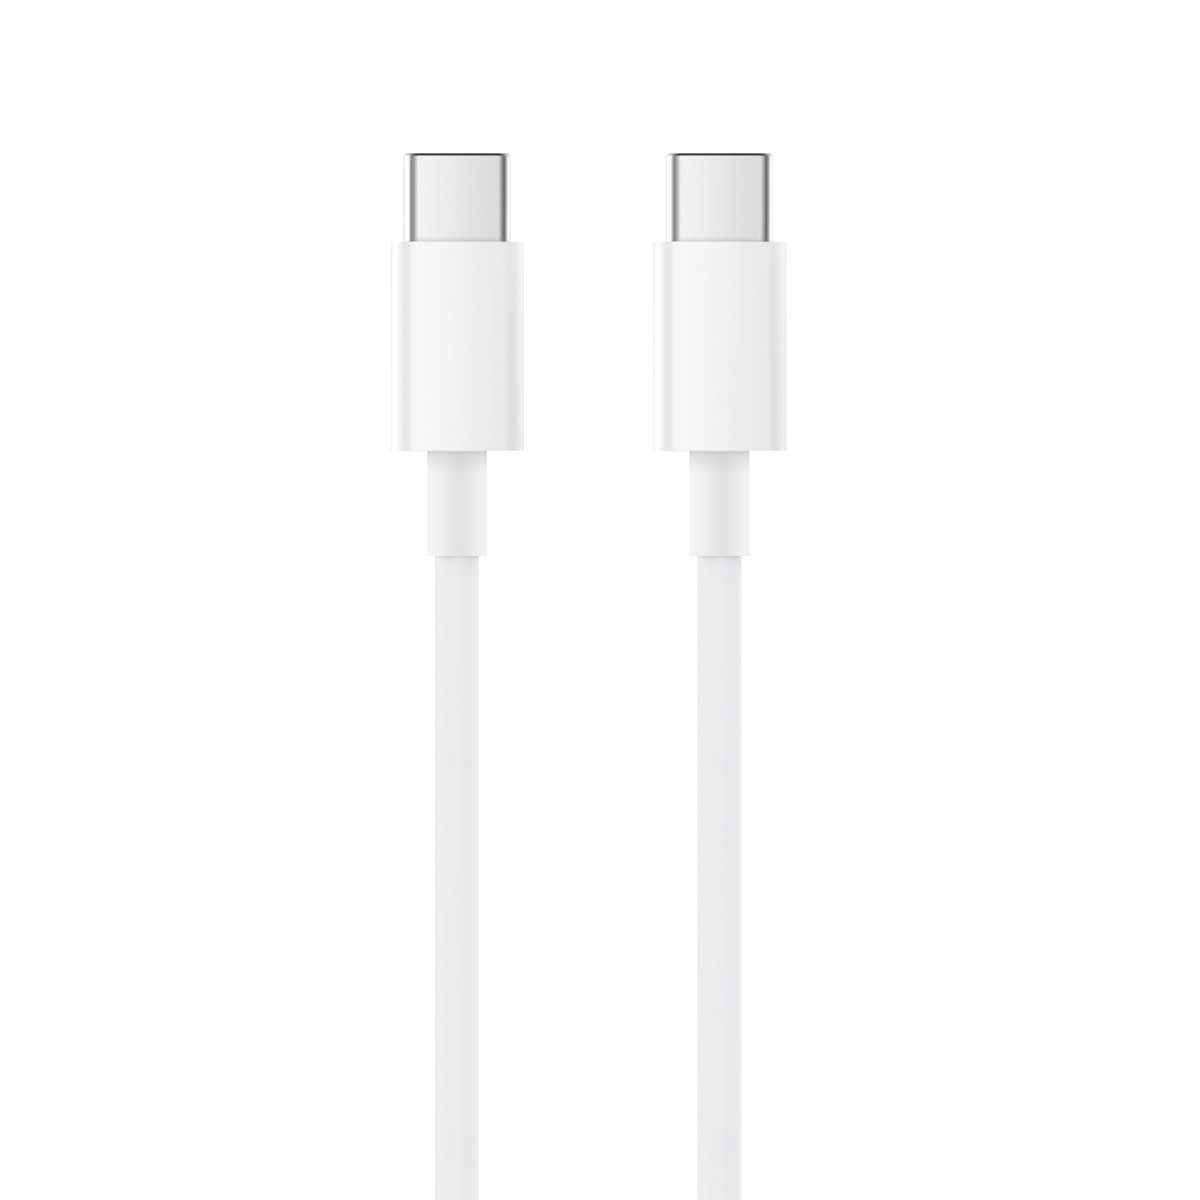 Xiaomi  Mi USB Type-C to Type-C Cable